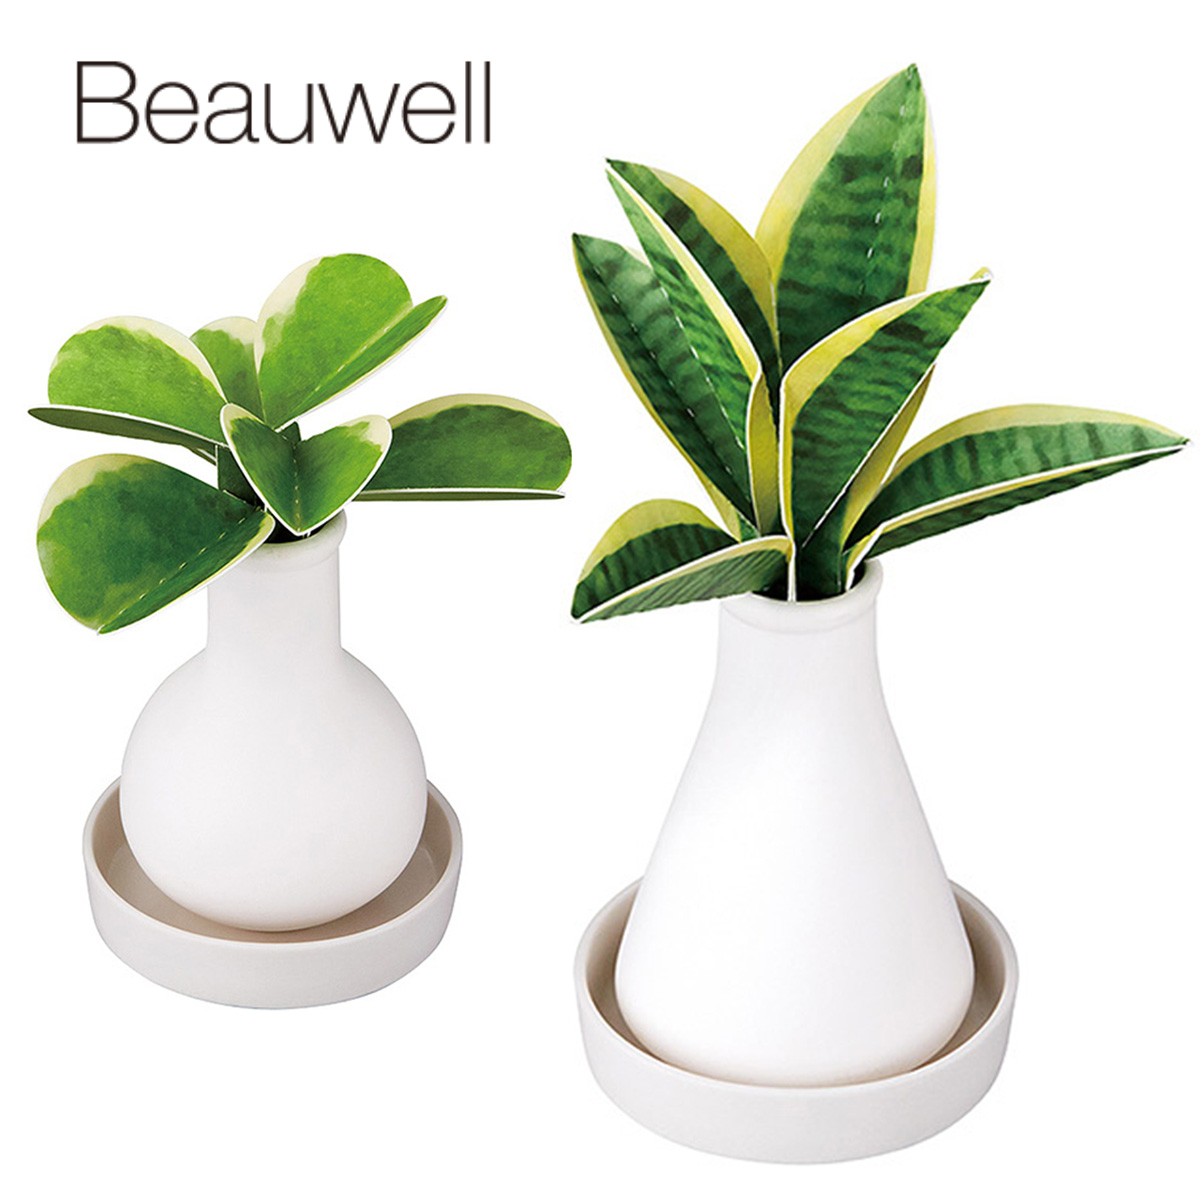 【Beauwell】ビューウェル ス・ポット 電気を使わない自然気化式のエコな観葉加湿器